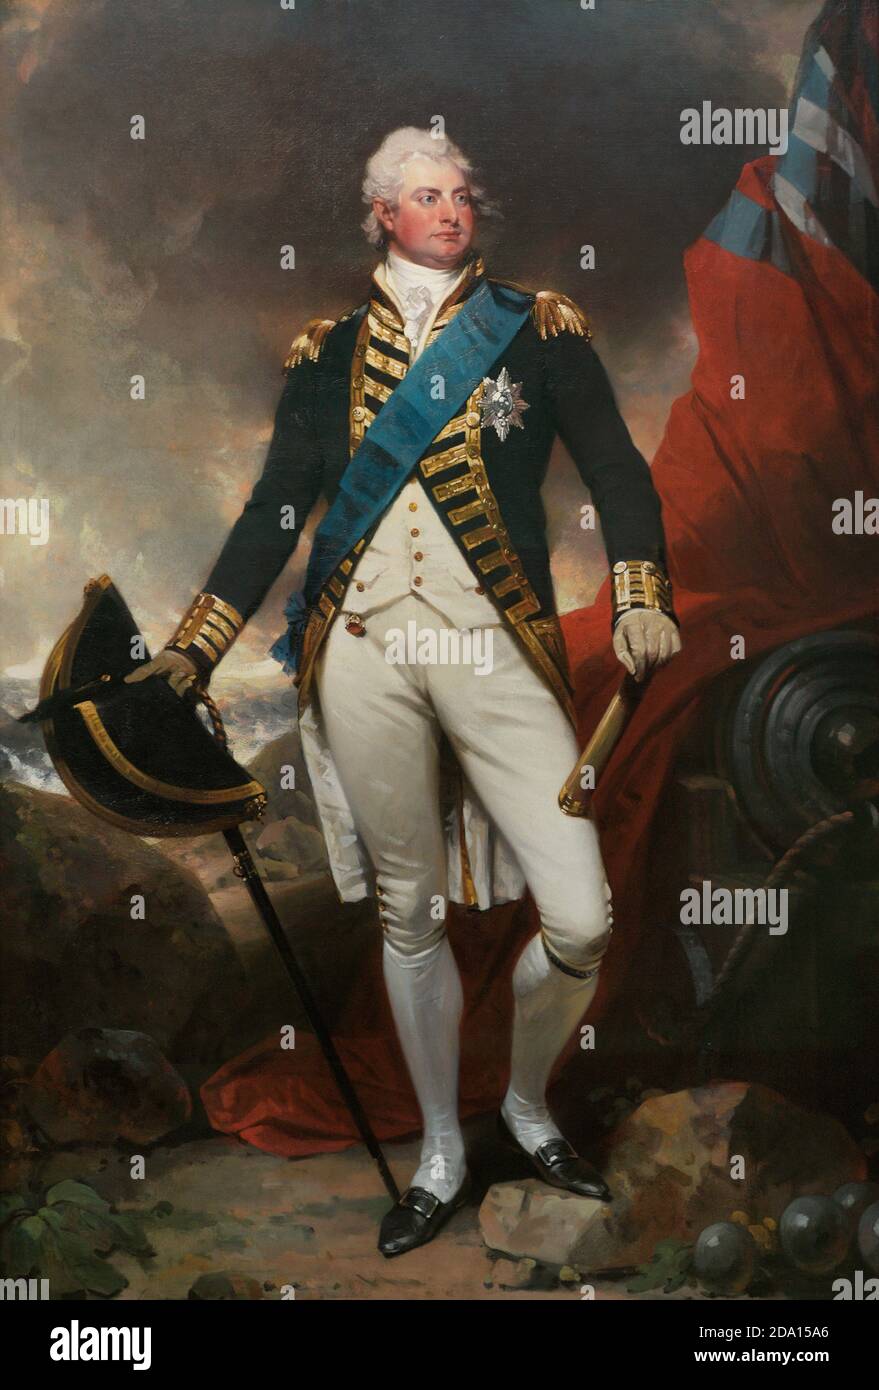 Roi William IV (1765-1837). Roi du Royaume-Uni (1830-1837). William IV représenté dans l'uniforme complet d'un amiral. Portrait de Sir Martin Archer Shee (1769-1850). Huile sur toile, c. 1800. Musée national du portrait. Londres, Angleterre, Royaume-Uni. Banque D'Images